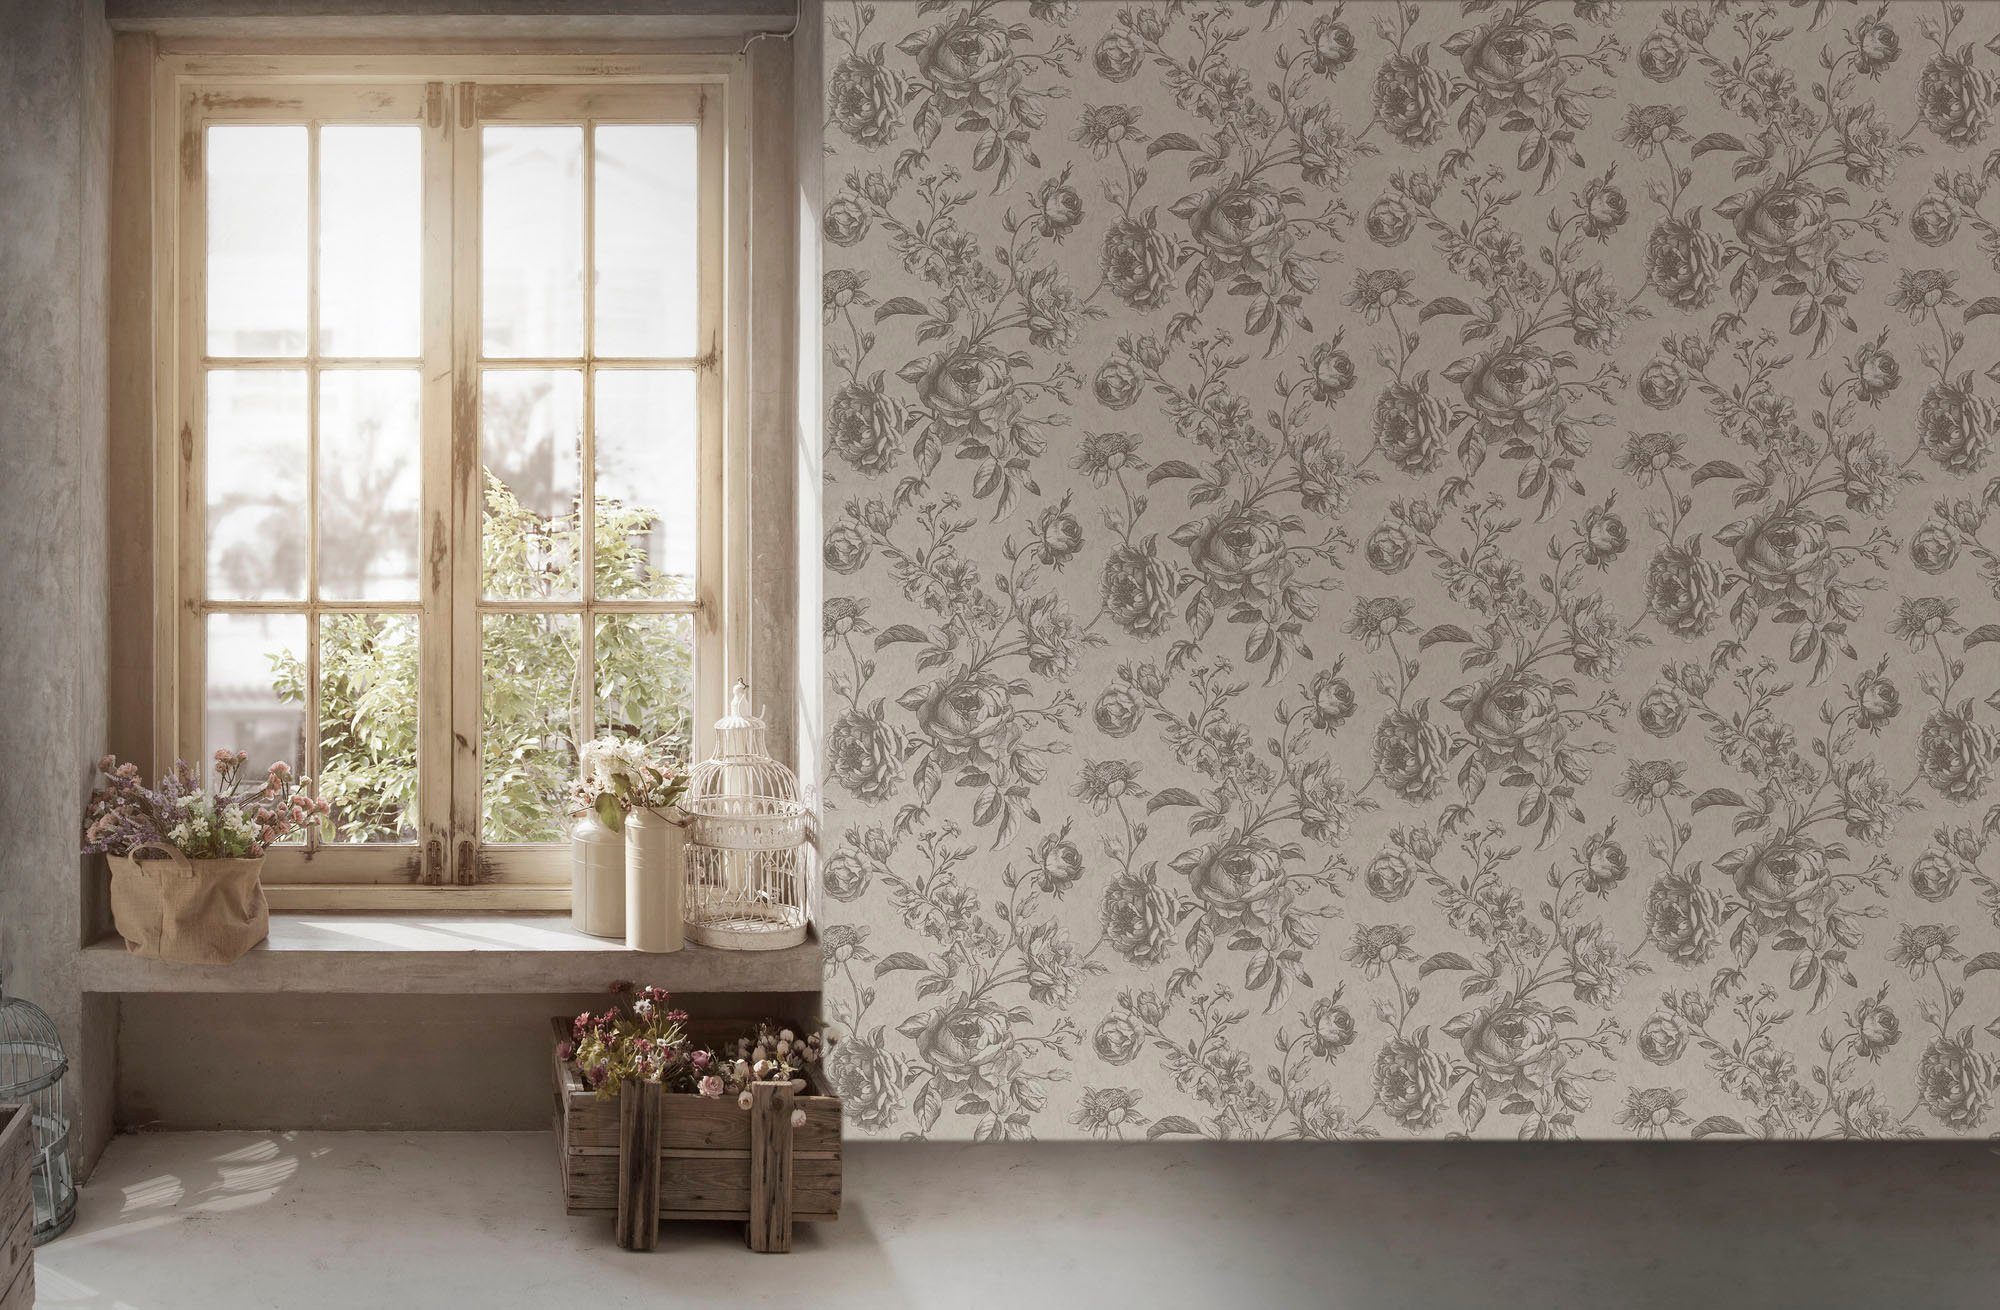 My natürlich, grau/weiß walls Blumen floral, geblümt, Vliestapete Tapete Home Spa, living My strukturiert, Floral